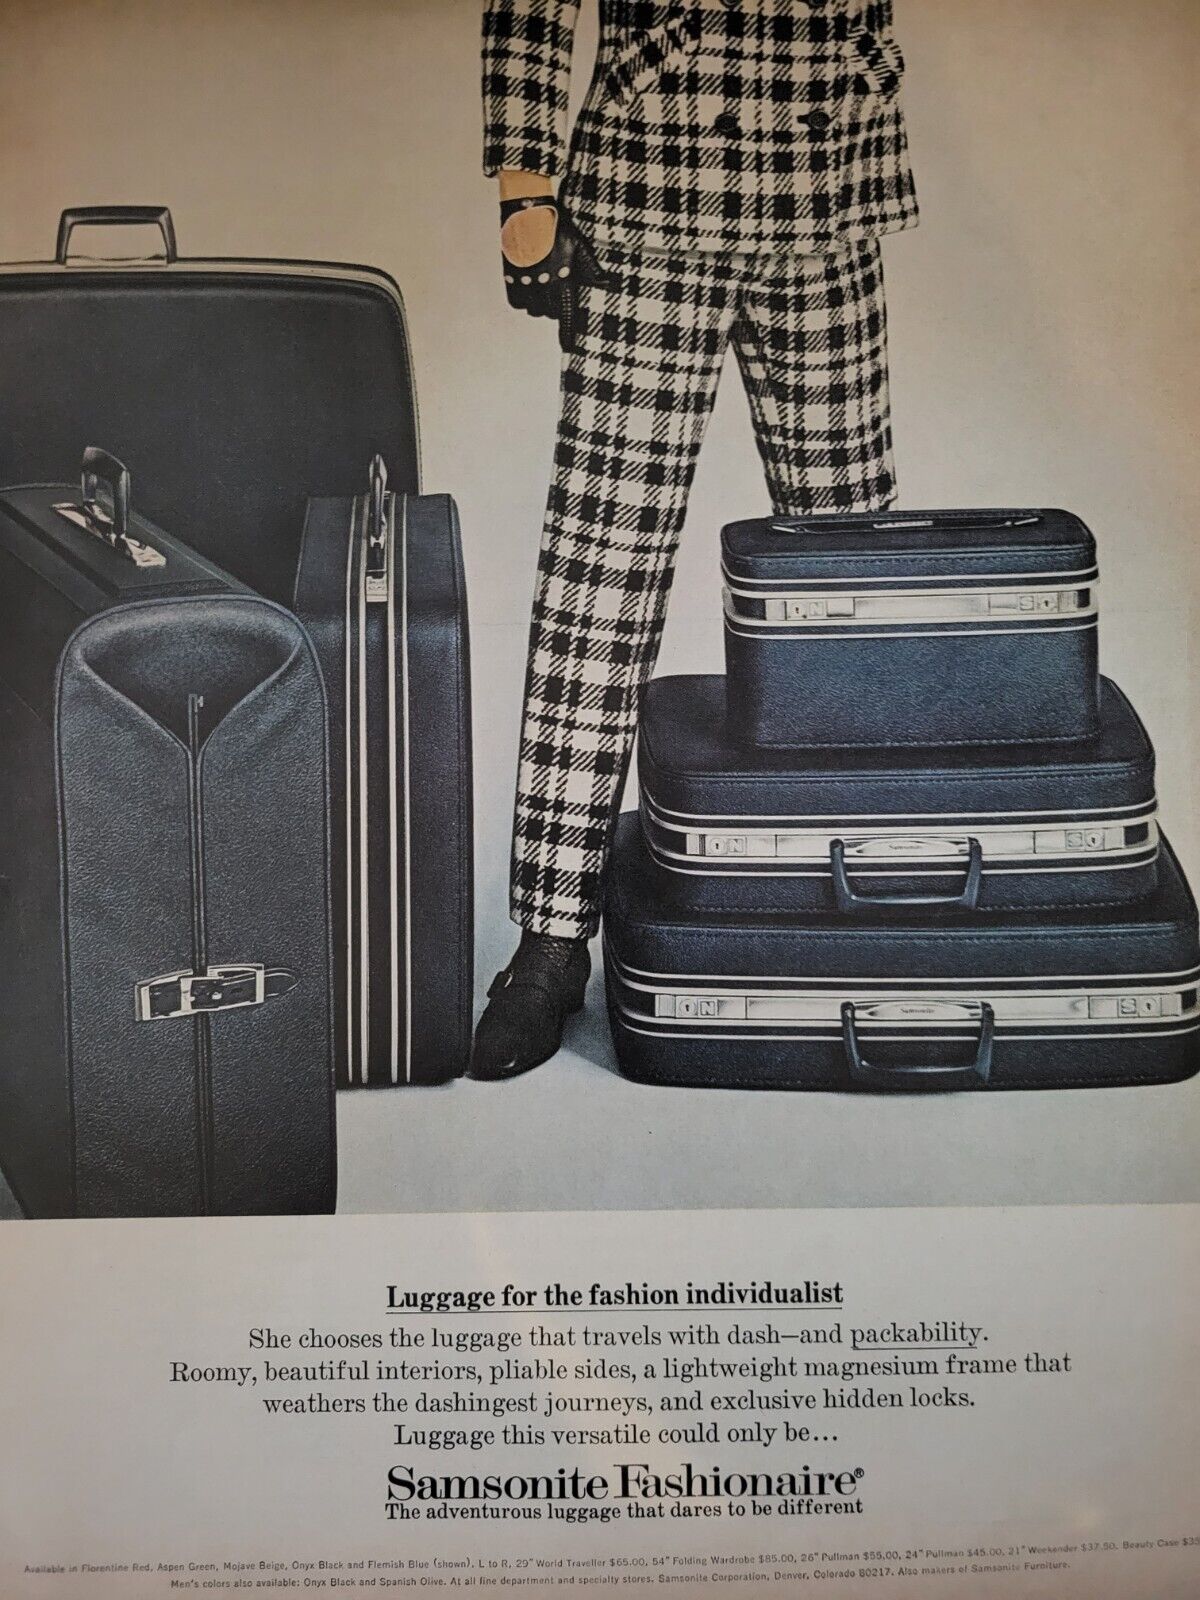 1967 Samsonite Fashionaire Luggage For Fashion Individualist Vintage ad